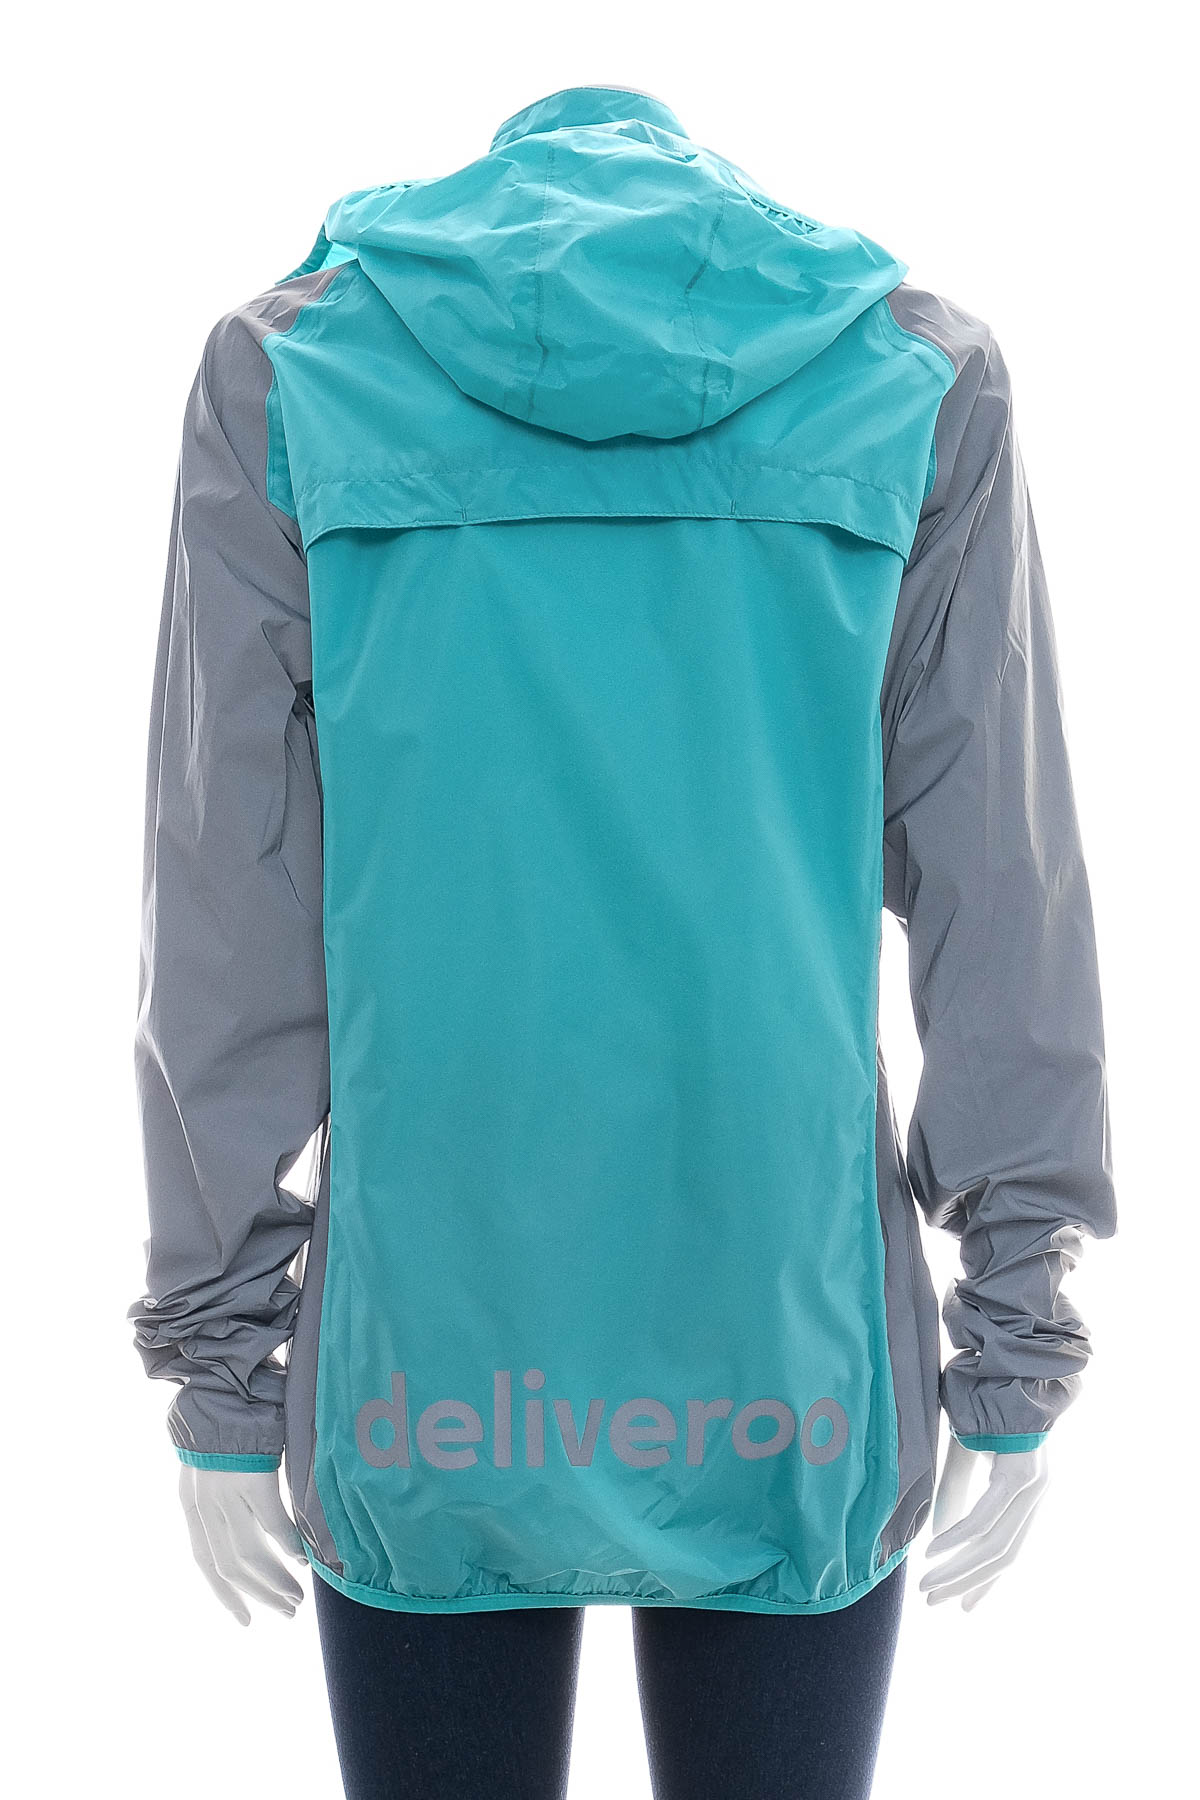 Female jacket - Deliveroo - 1